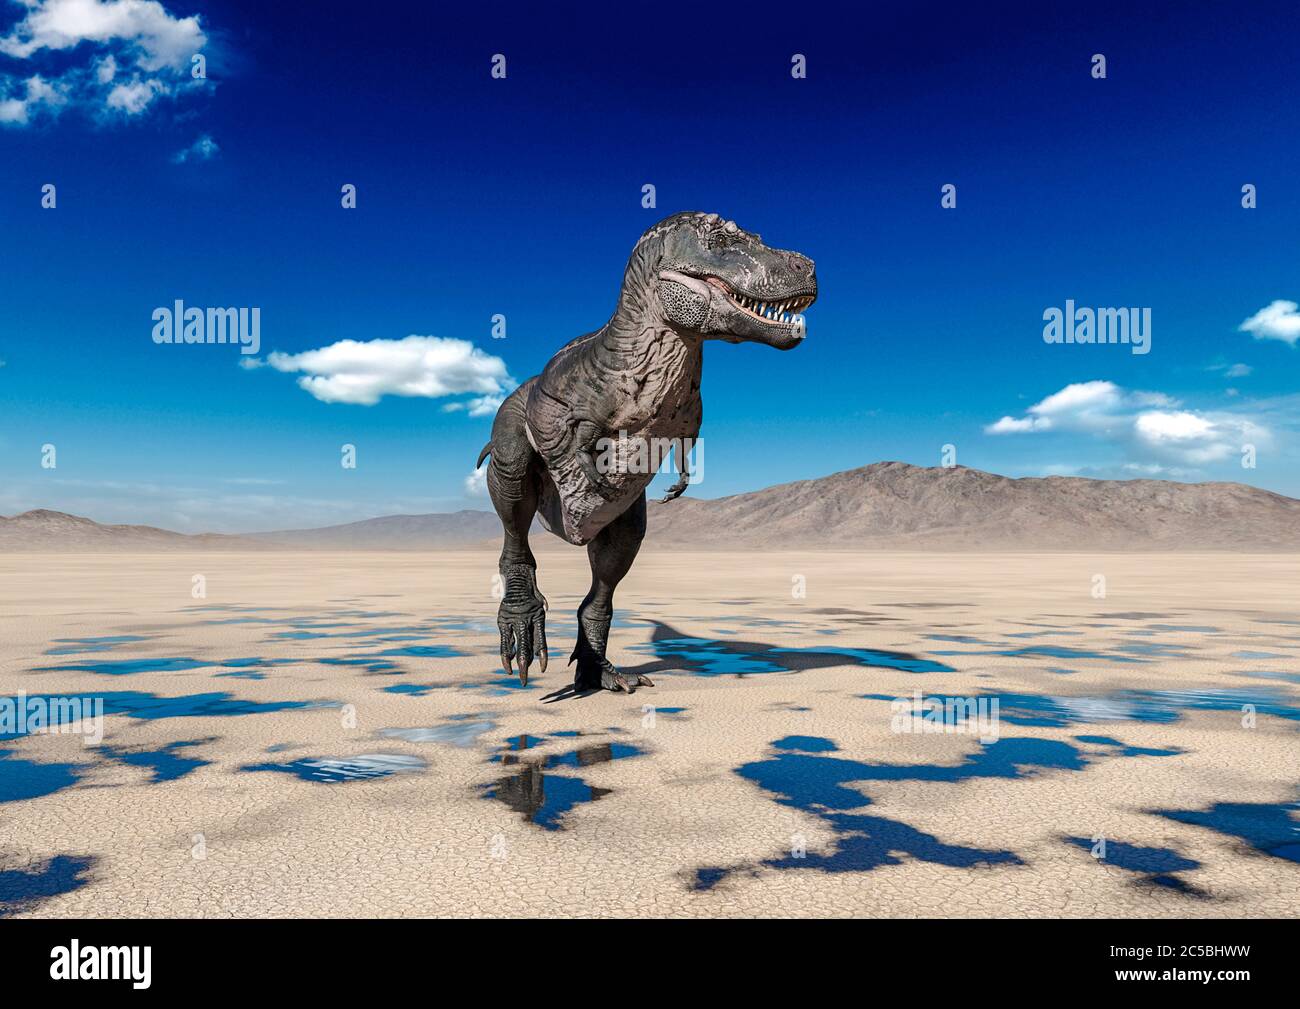 tyrannosaurus rex walking alone on desert, 3d illustration Stock Photo